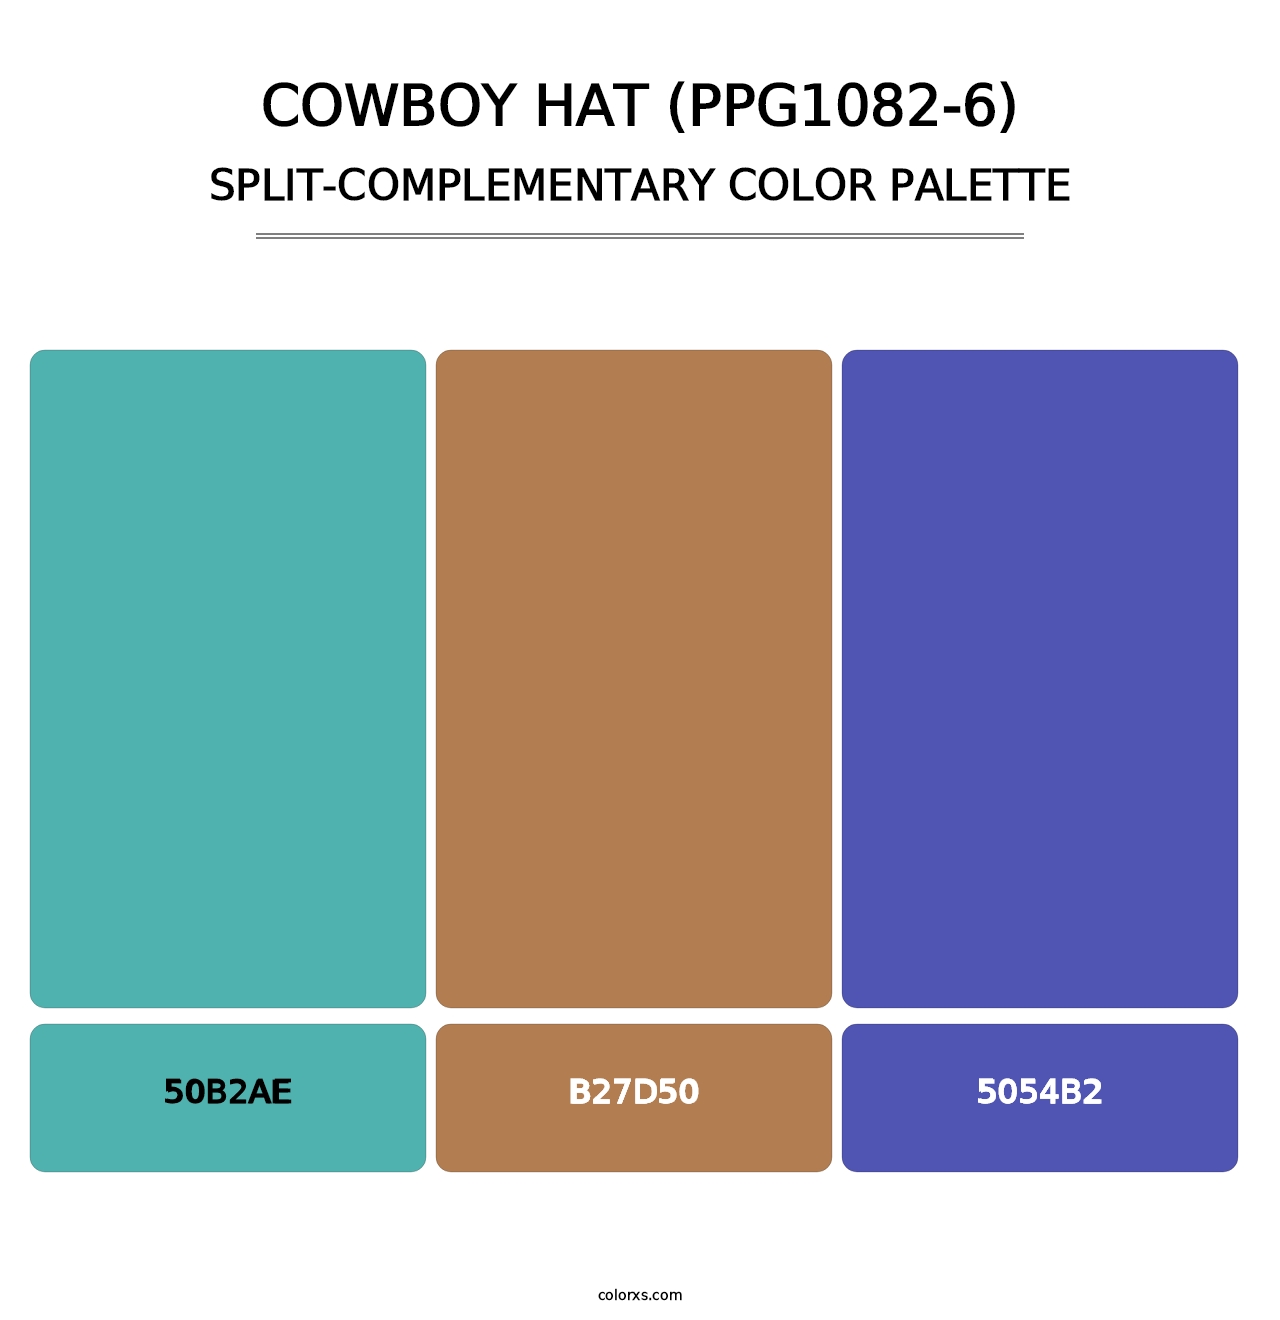 Cowboy Hat (PPG1082-6) - Split-Complementary Color Palette